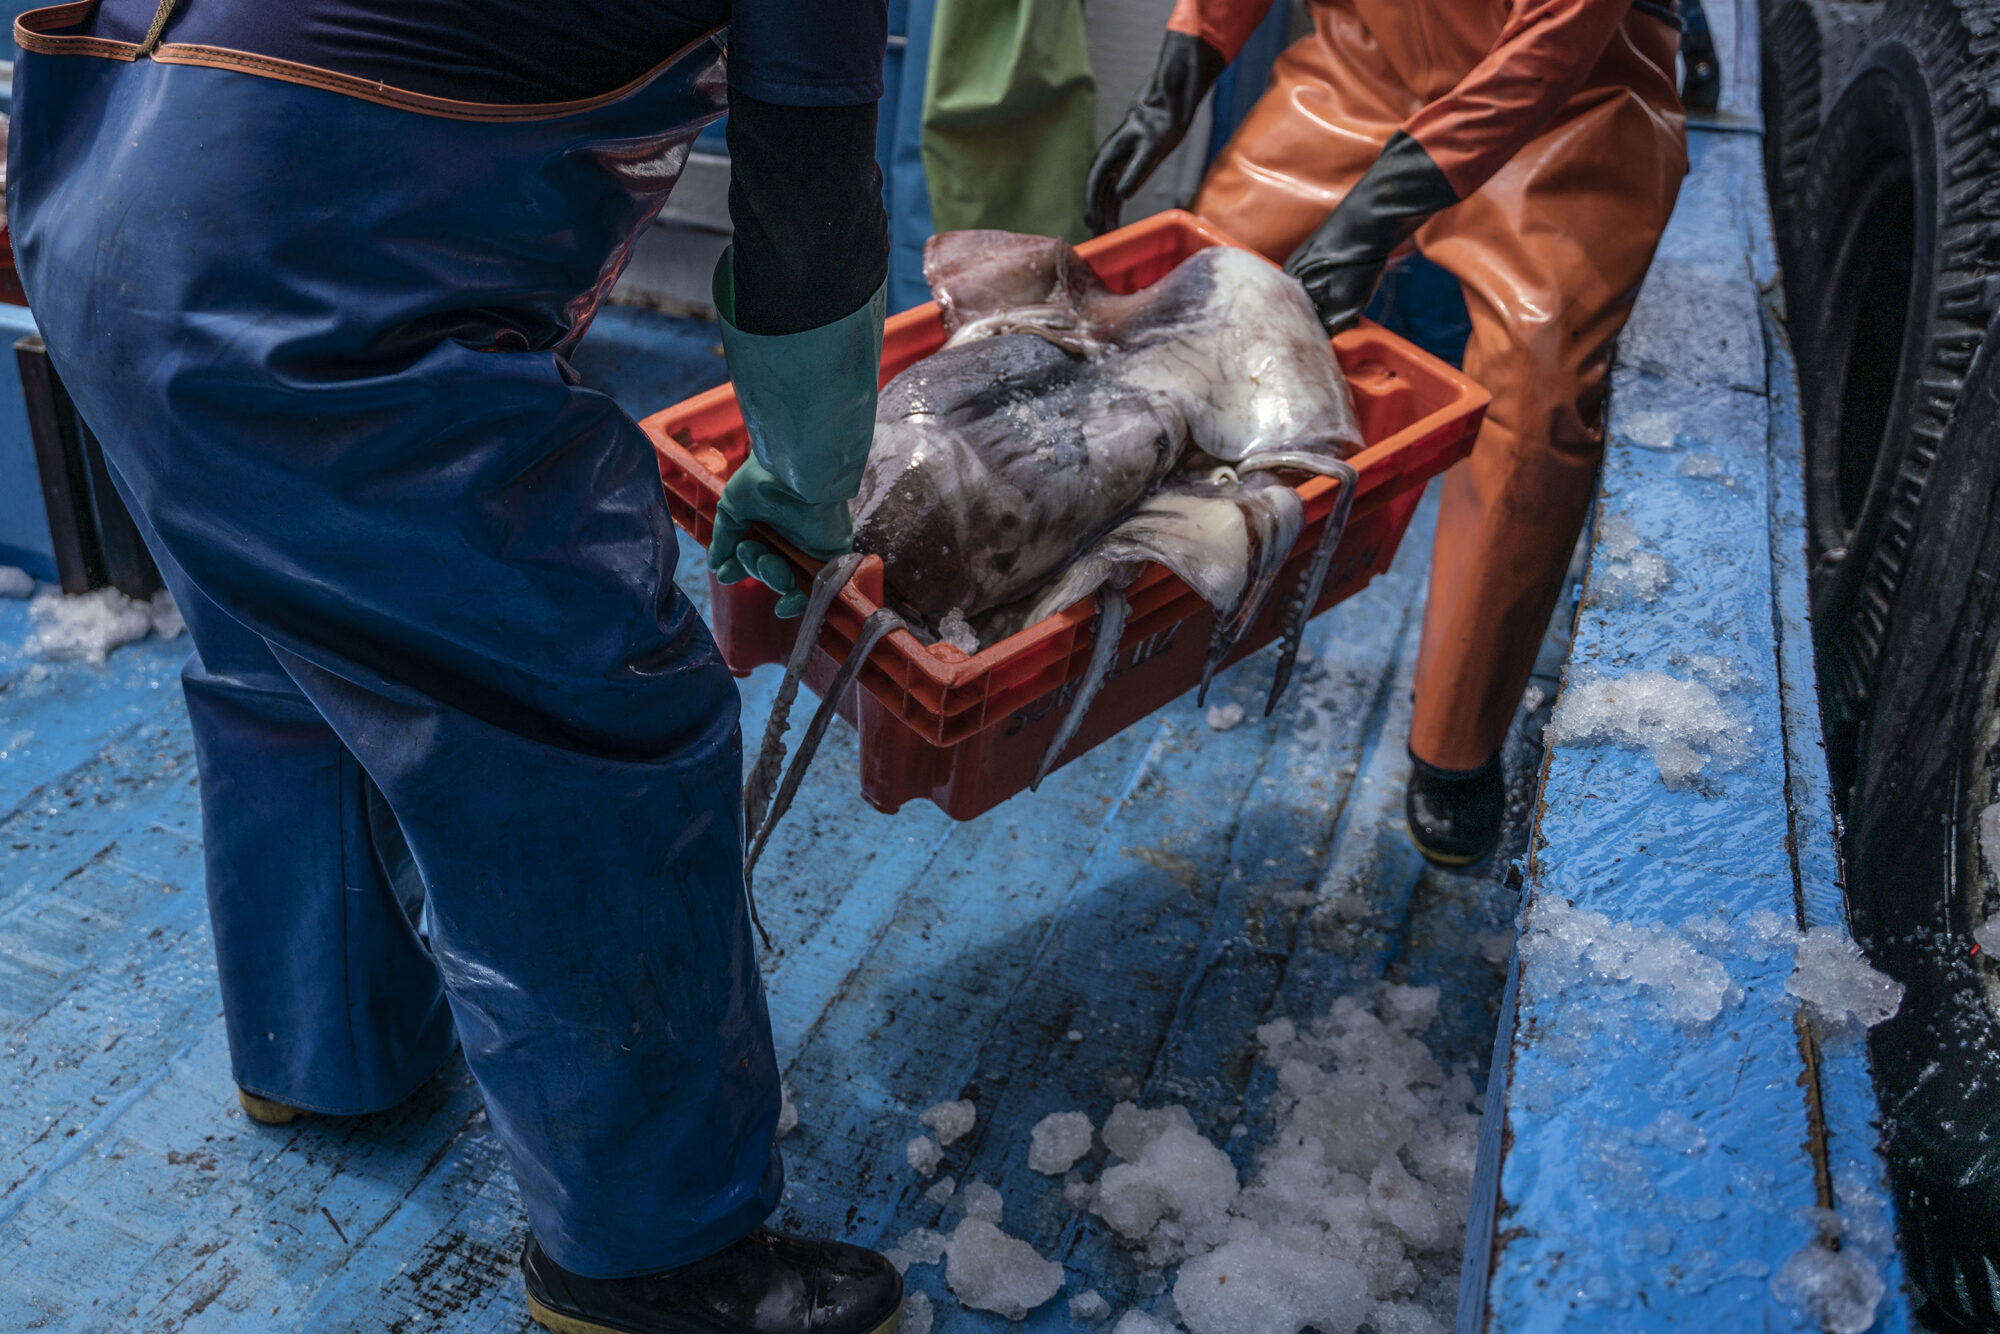 <p>Pescadores descarregam lulas (ou potas, como são conhecidas nas águas do Pacífico) no porto de Paita, no norte do Peru. Pescadores alegam que a pota está ameaçada pela caputura excessiva de embarcações ilegais e não regulamentadas que operam nas águas da região, levantando preocupações sobre a sustentabilidade das lulas (Imagem: Leslie Moreno Custodio)</p>